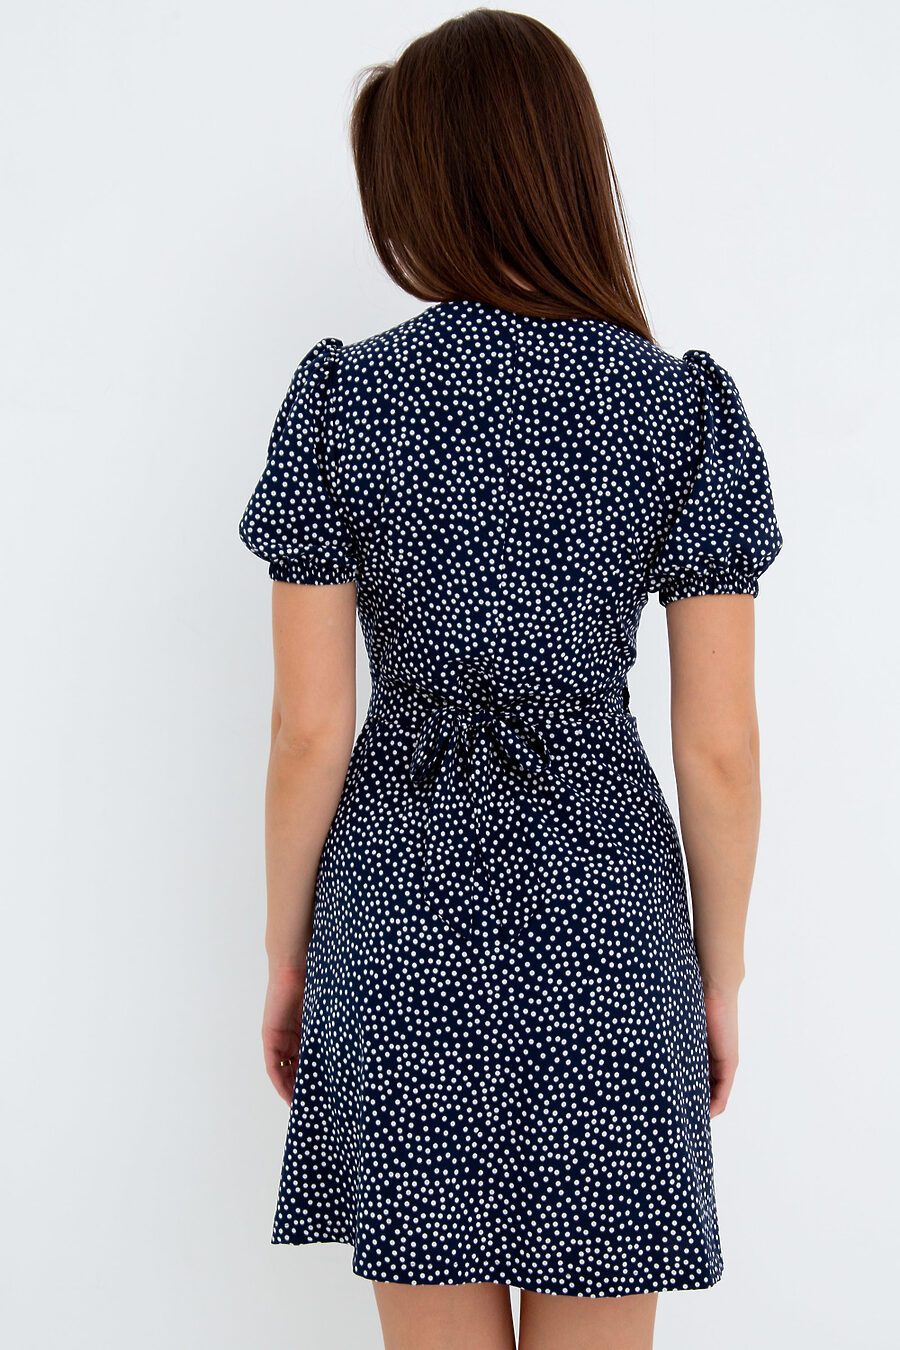 Платье П-18 для женщин НАТАЛИ 775474 купить оптом от производителя. Совместная покупка женской одежды в OptMoyo